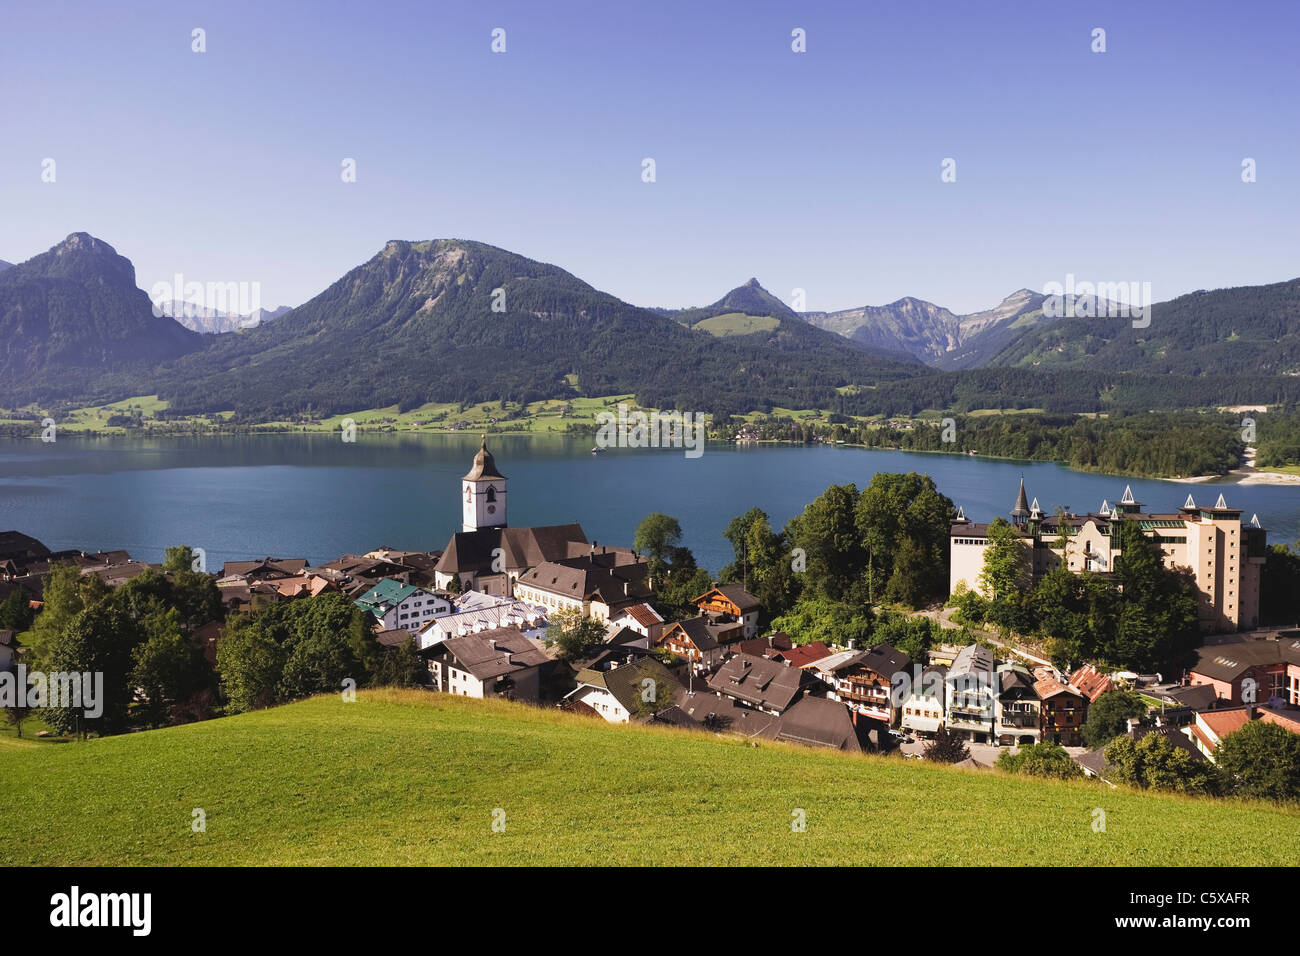 Austria, Lake Wolfgangsee, St Wolfgang, Church of Pilgrimage Stock Photo